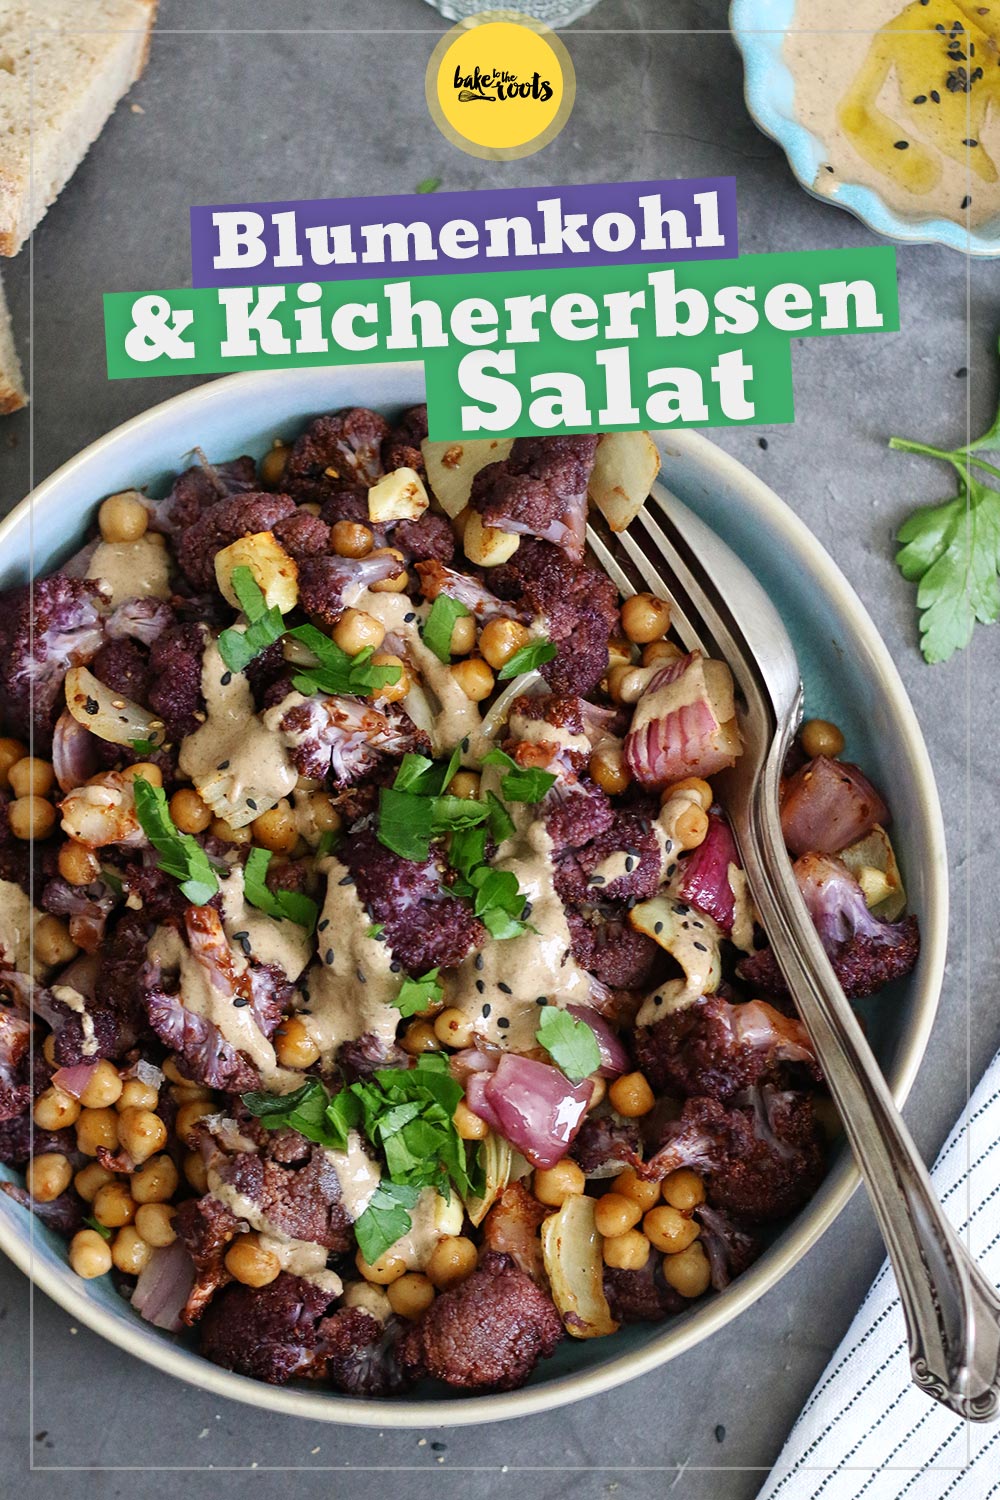 Salat mit geröstetem Blumenkohl, Kichererbsen & Harissa | Bake to the roots